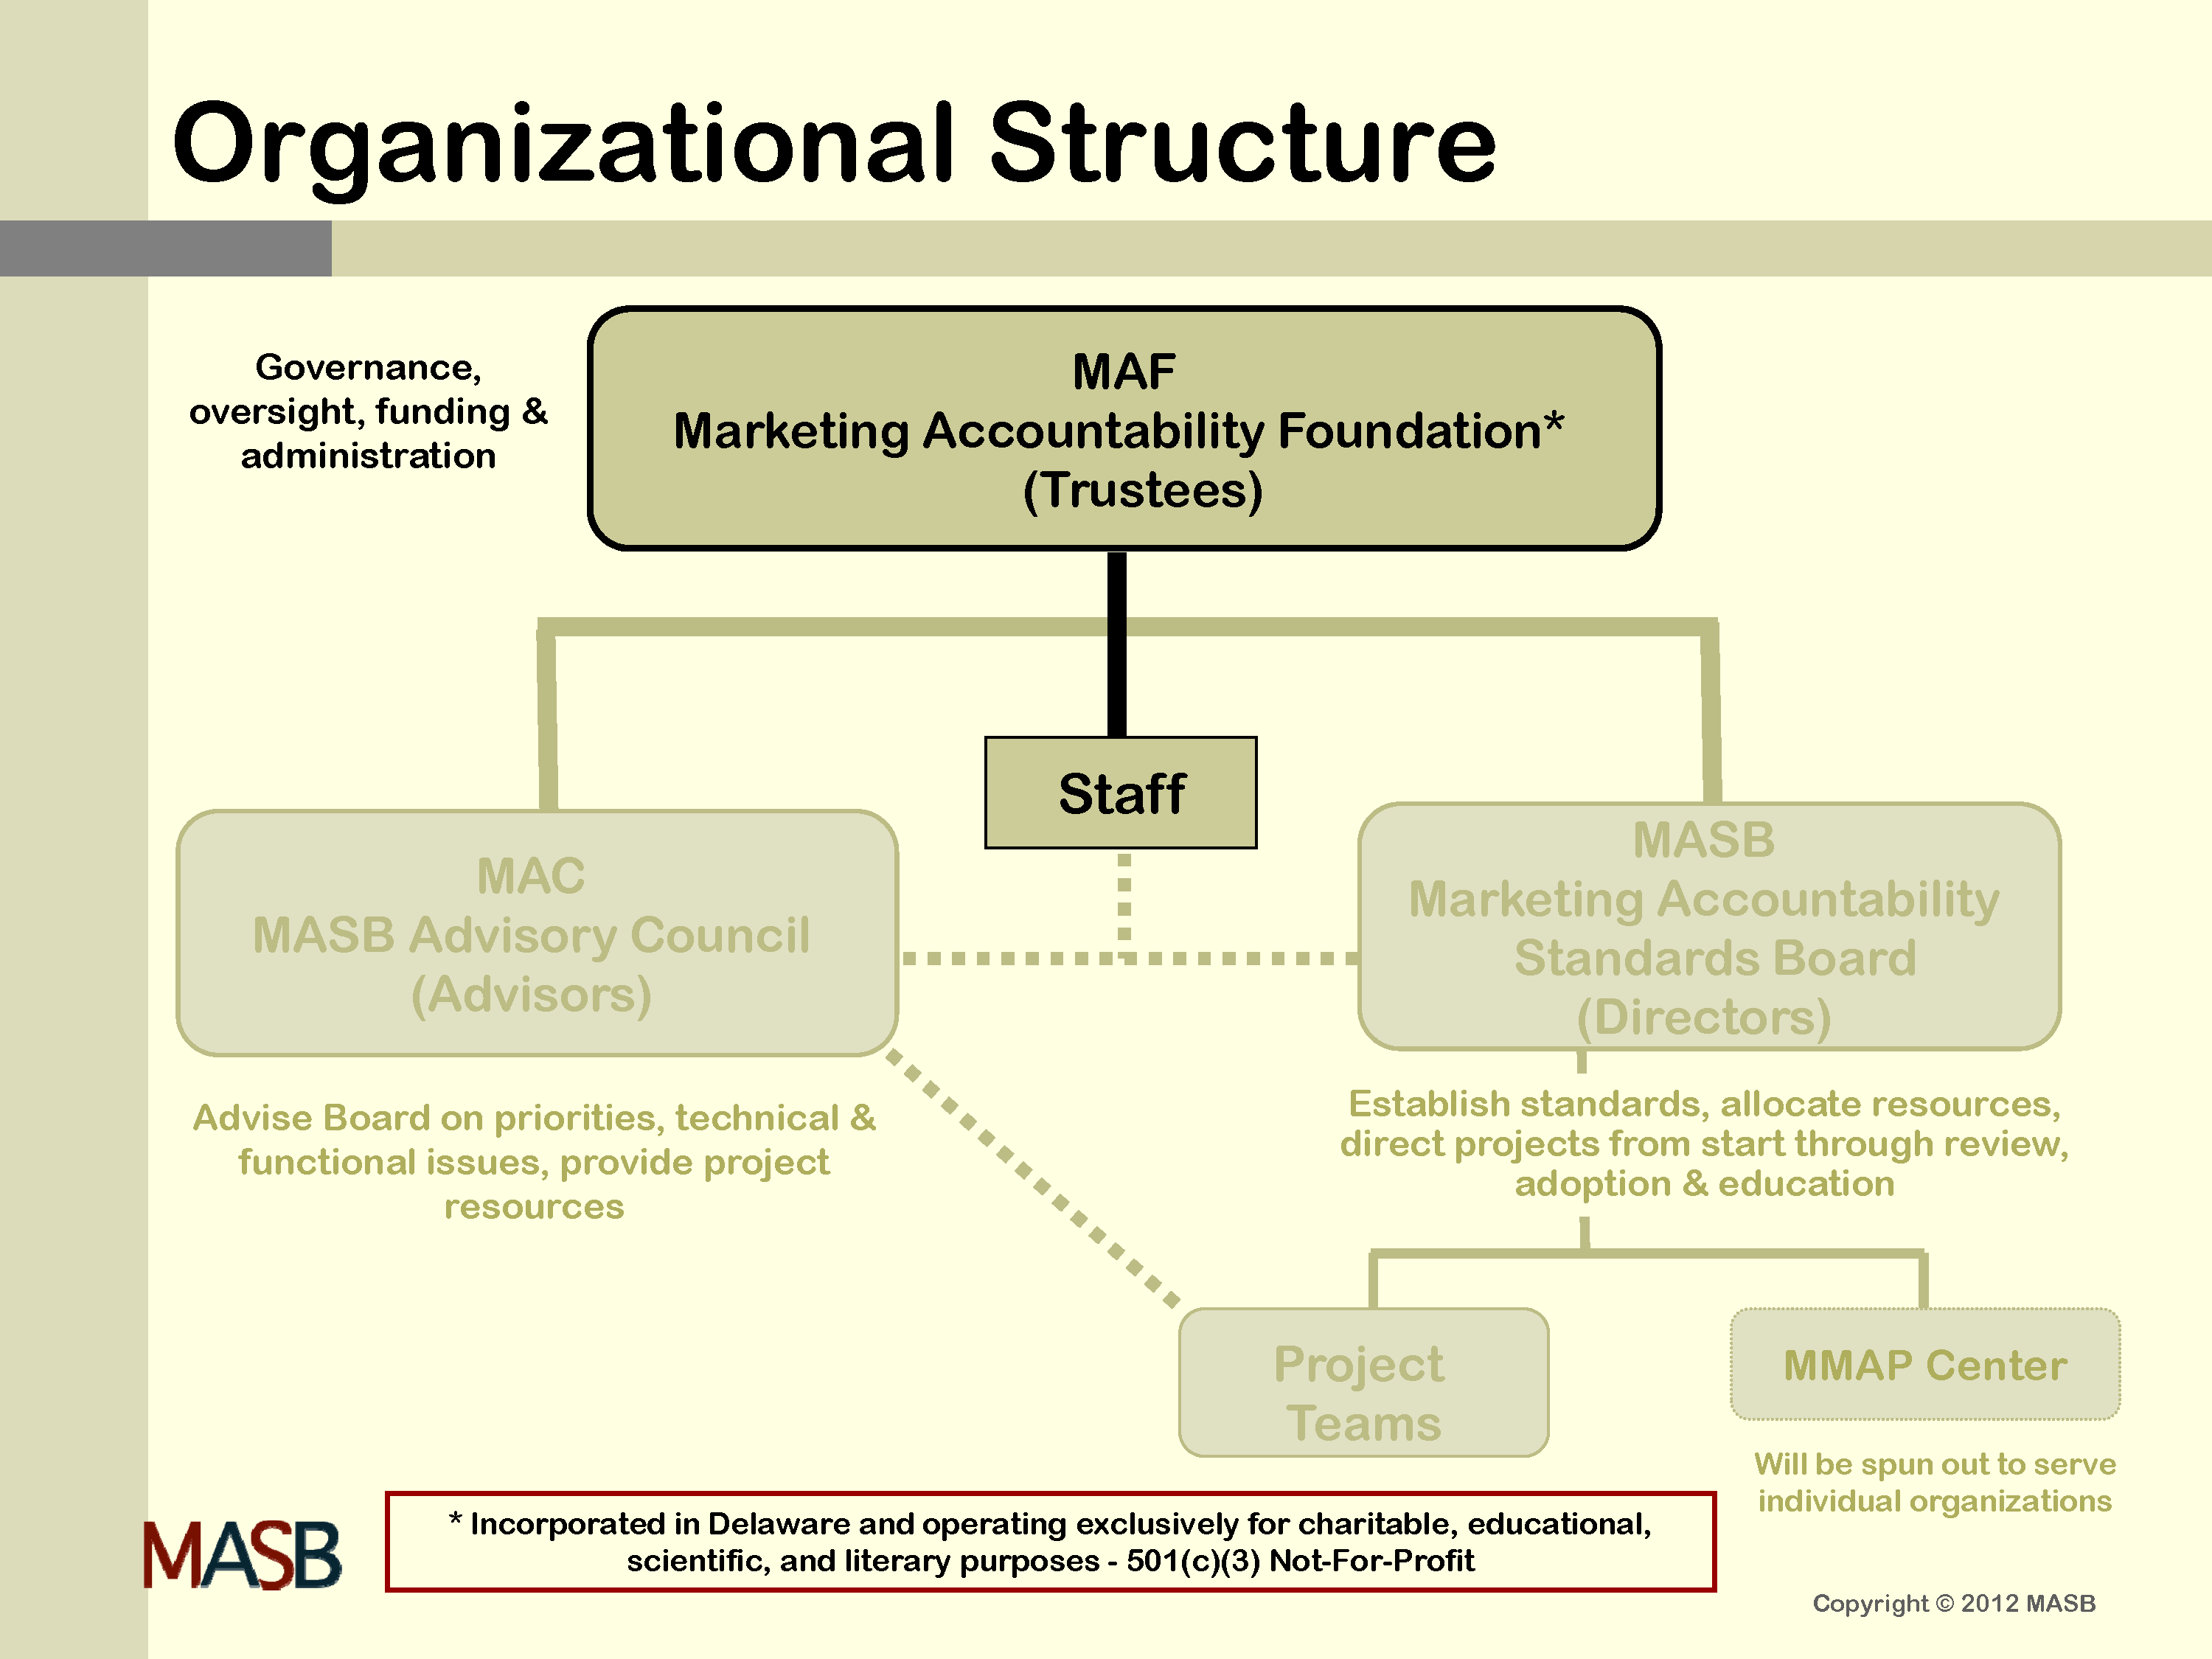 MAF Organizational Structure